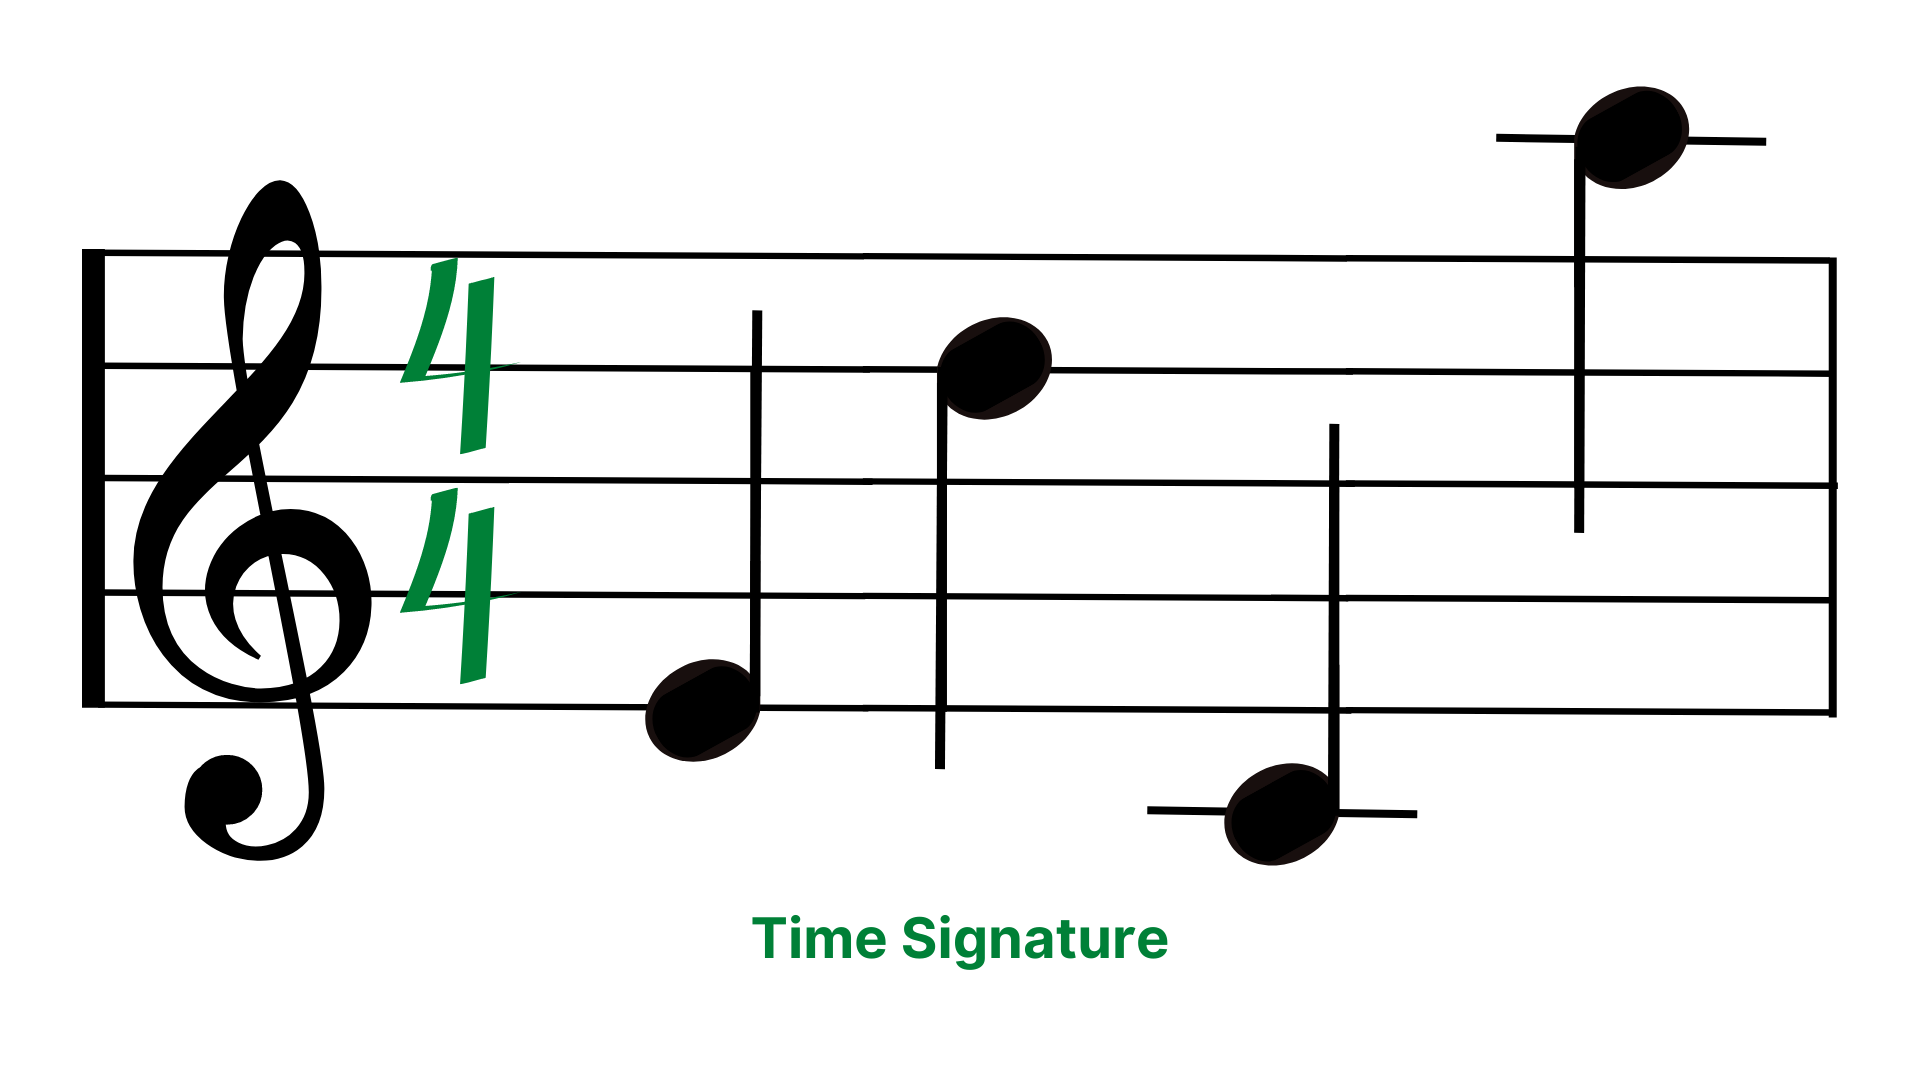 Time Signature